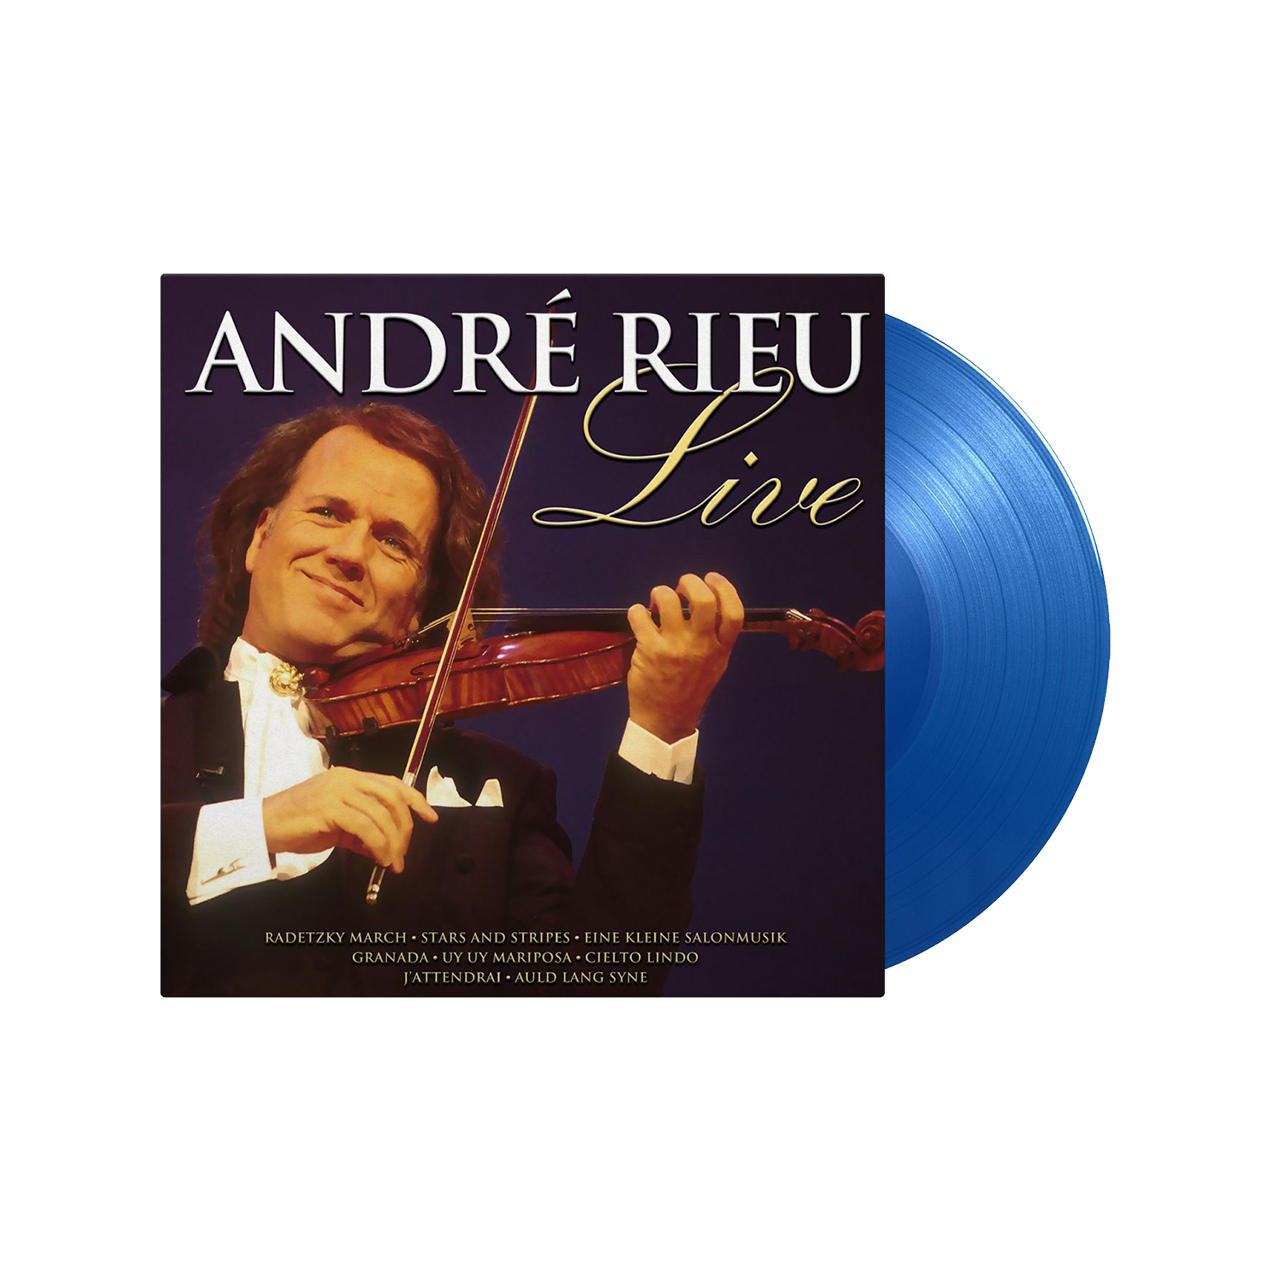 André Rieu - Live: Limited Translucent Blue Vinyl LP.